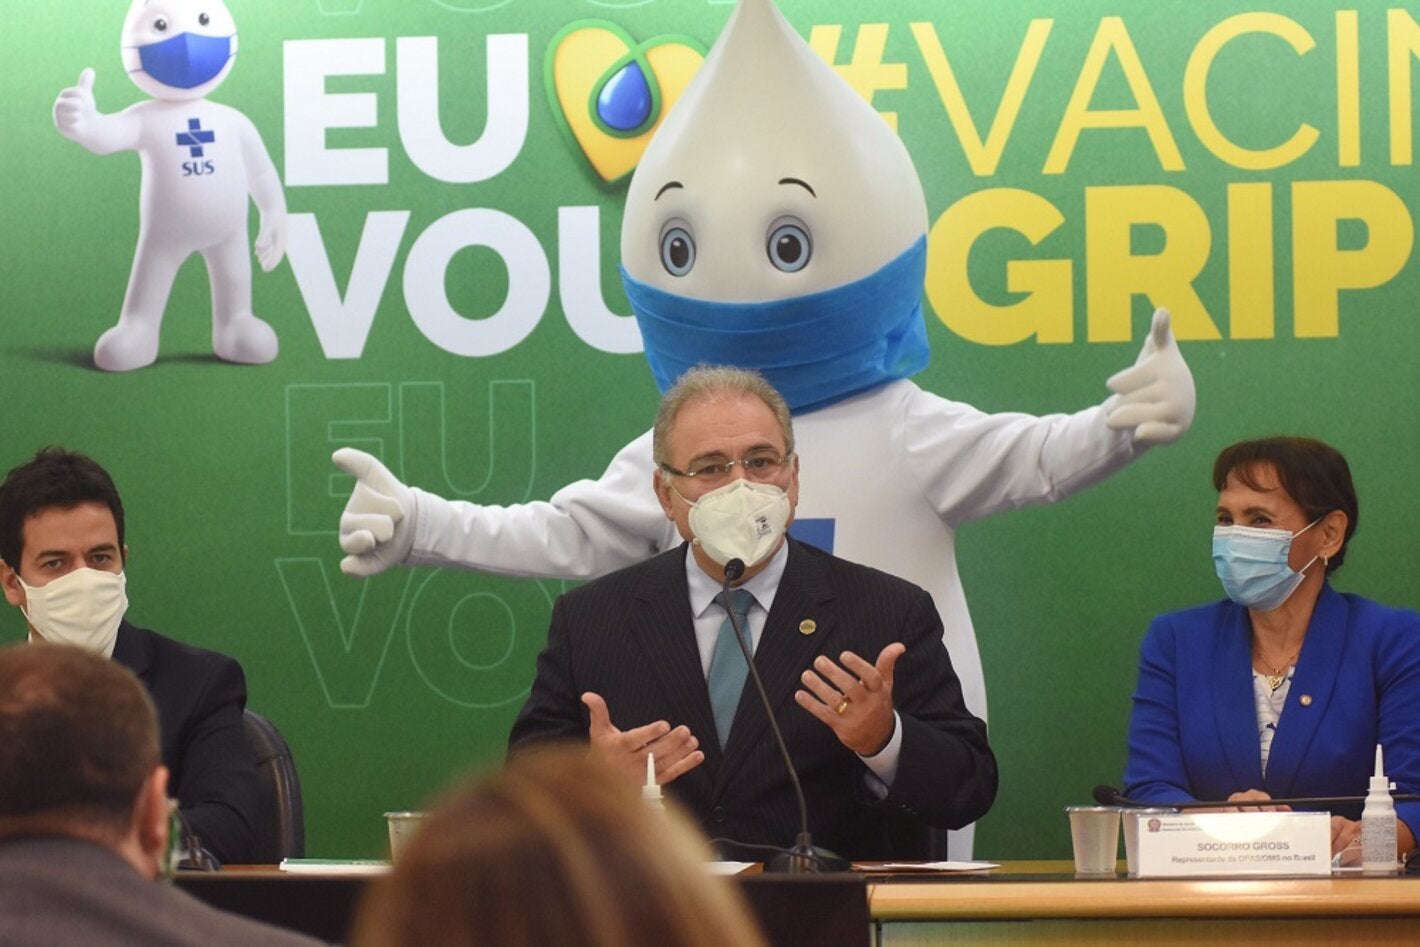 Lançamento da campanha de vacinação contra a gripe no Brasil